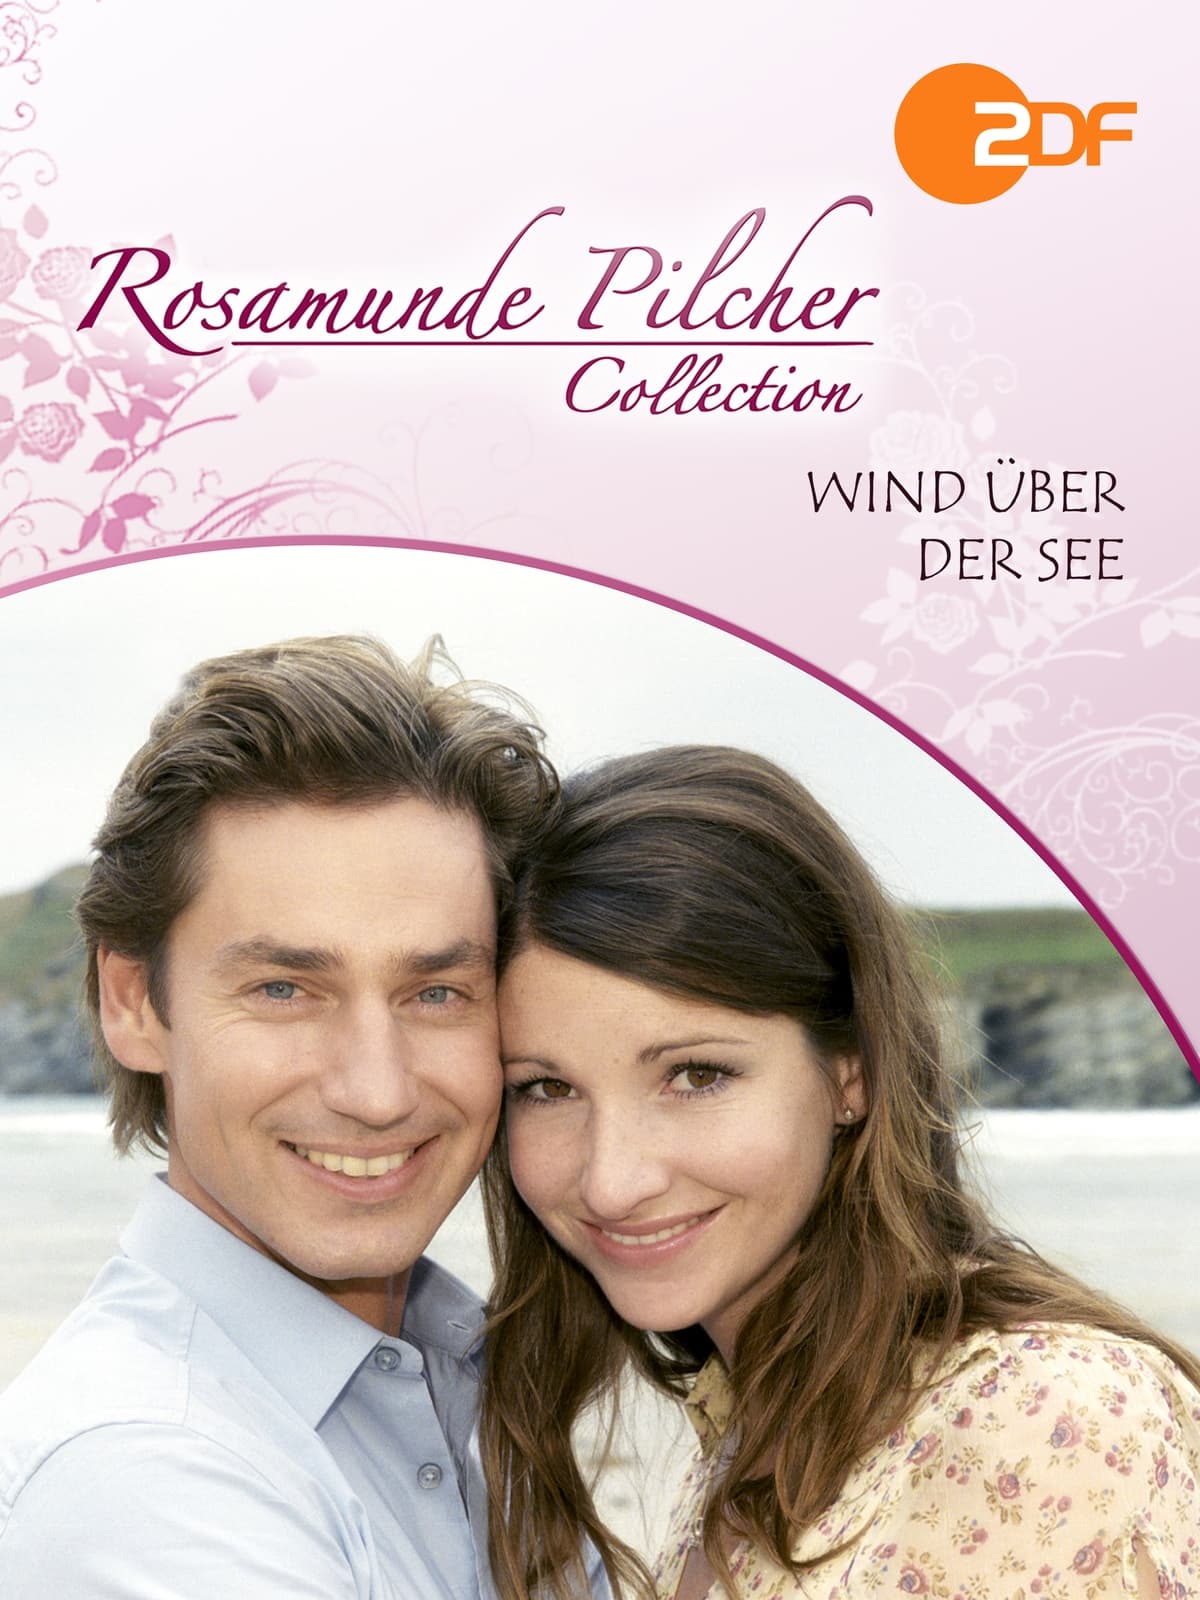 Rosamunde Pilcher: Wind über der See (2007)